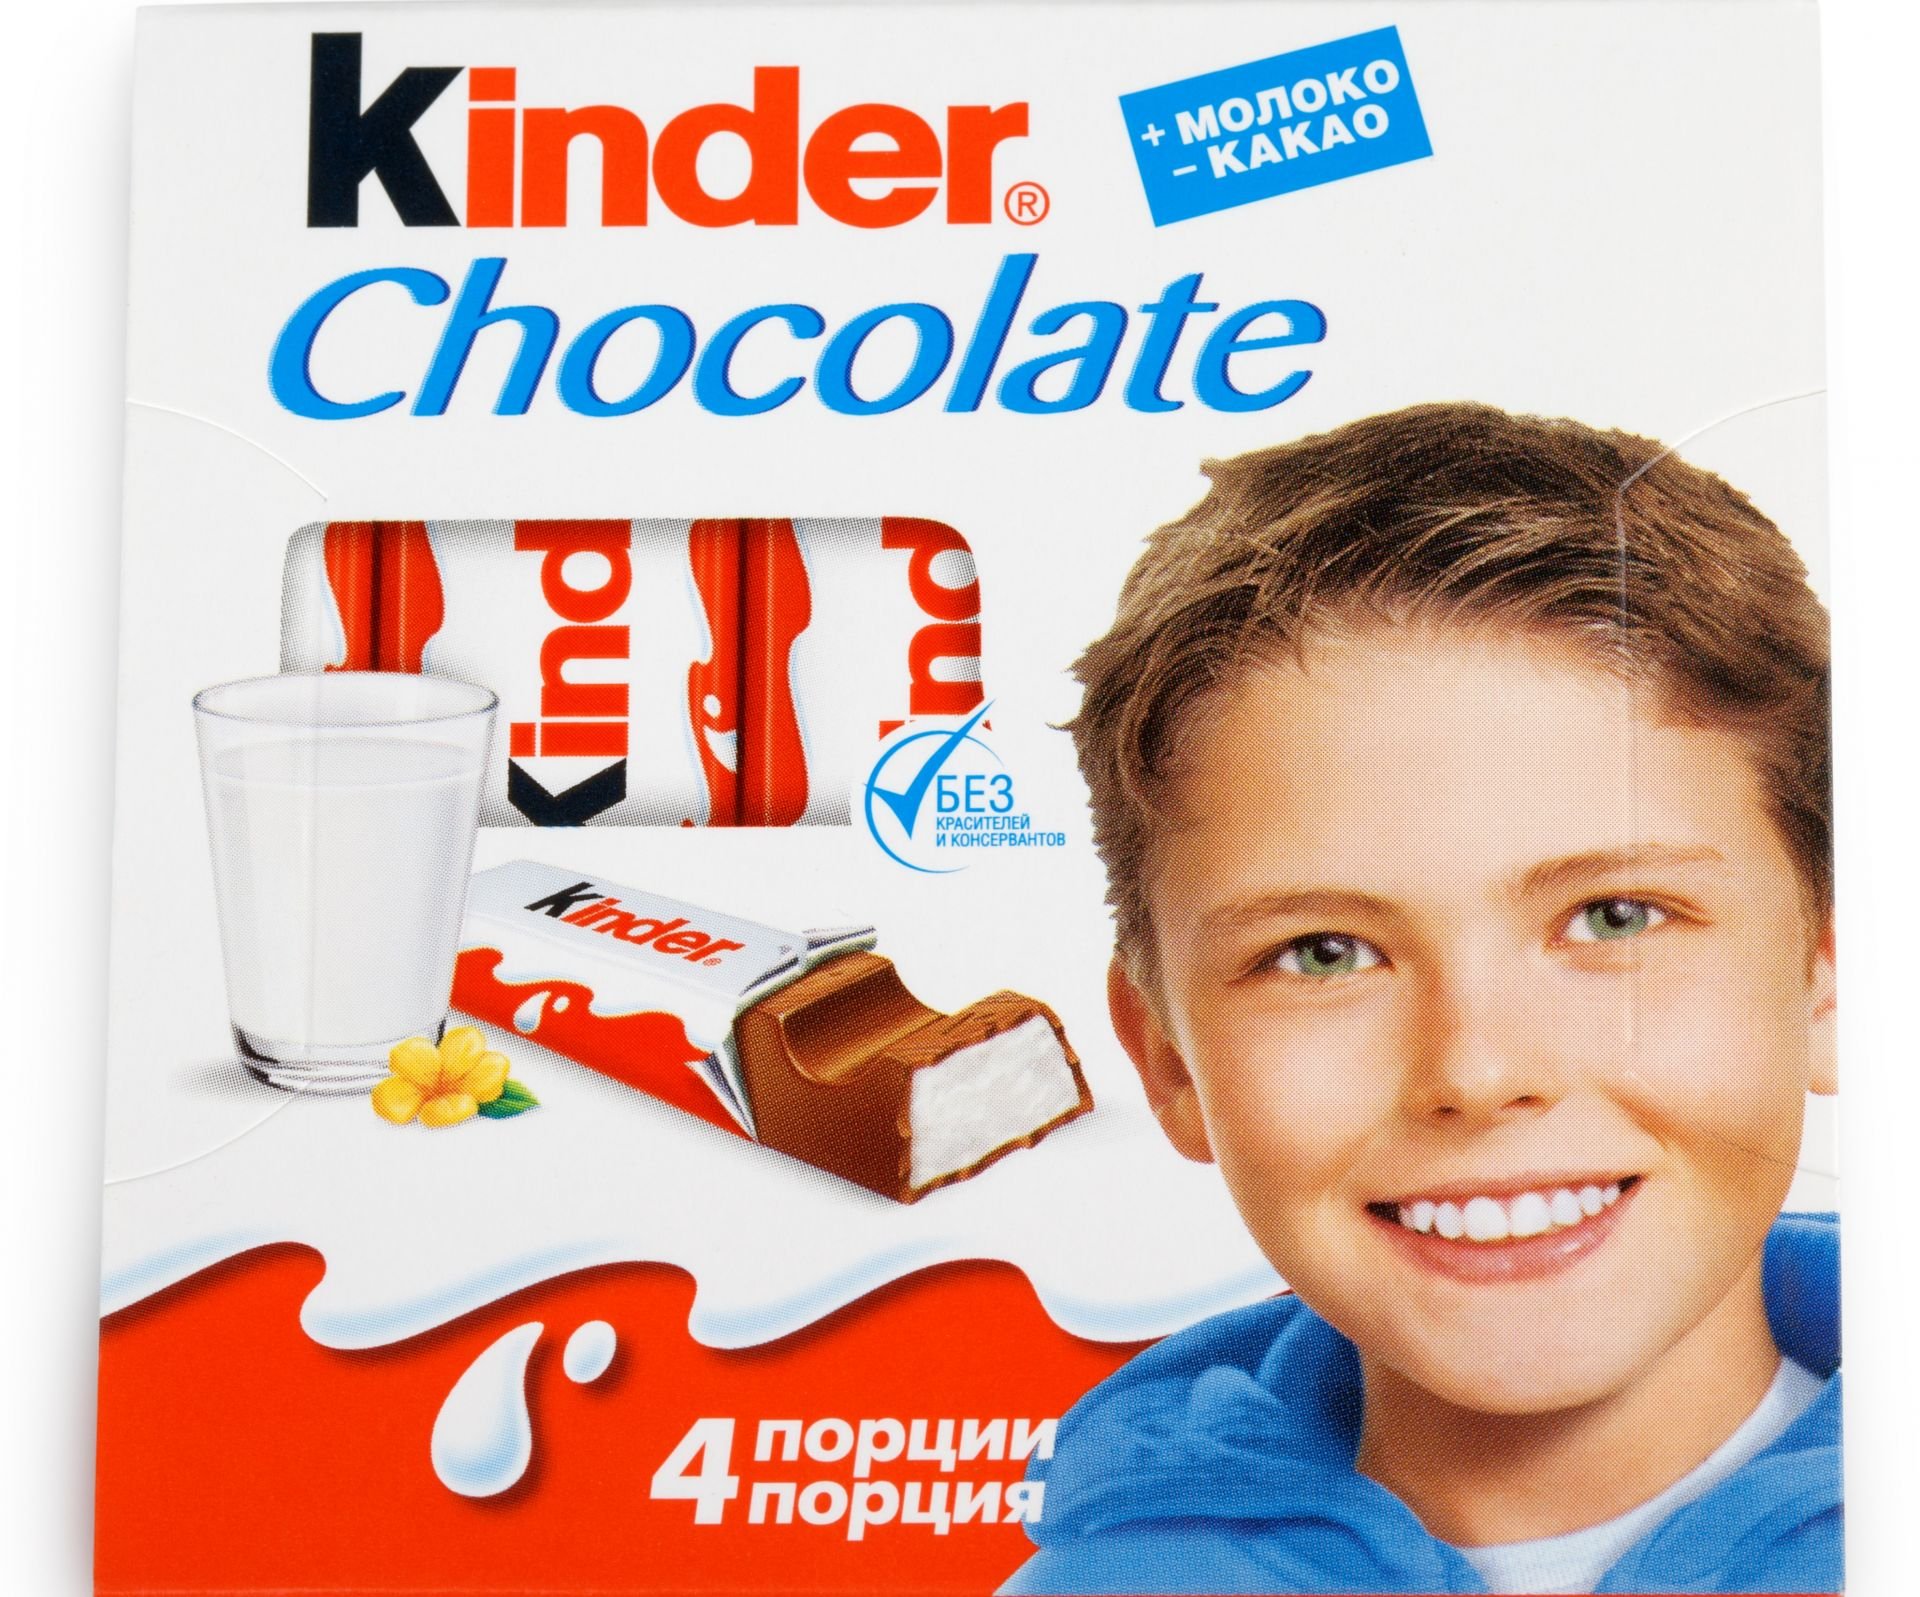 Киндер читаем. Гюнтер Эурингер kinder. Мальчик с Киндер шоколада. Шоколадка Киндер. Киндер шоколад мальчик на обложке.